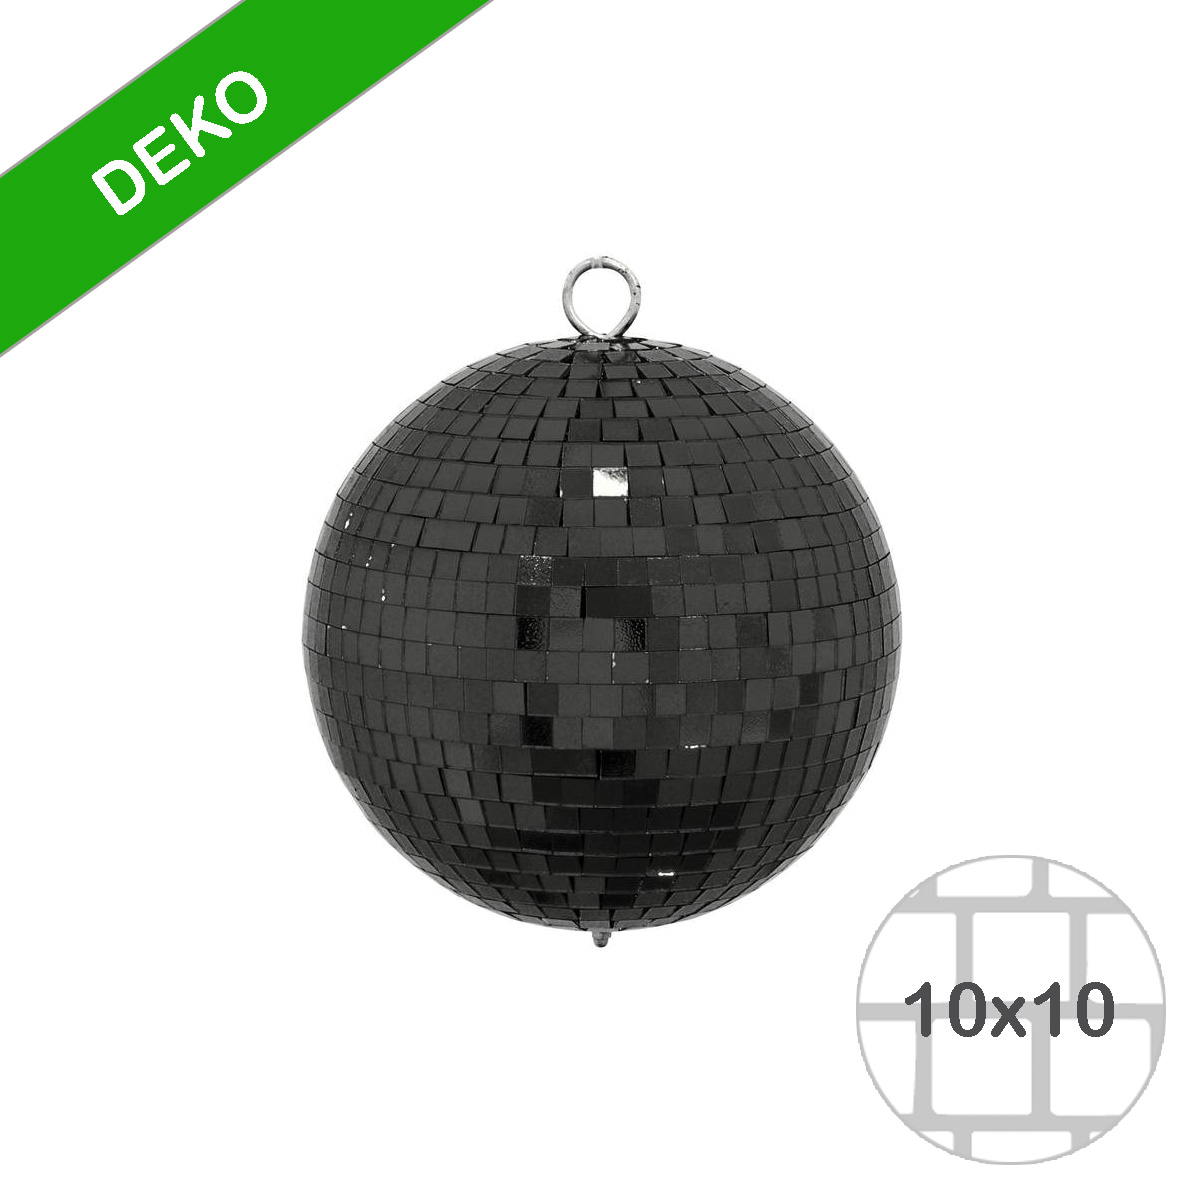 Spiegelkugel 15cm farbig schwarz- Diskokugel (Discokugel) zur Dekoration - Echtglas - mirrorball black